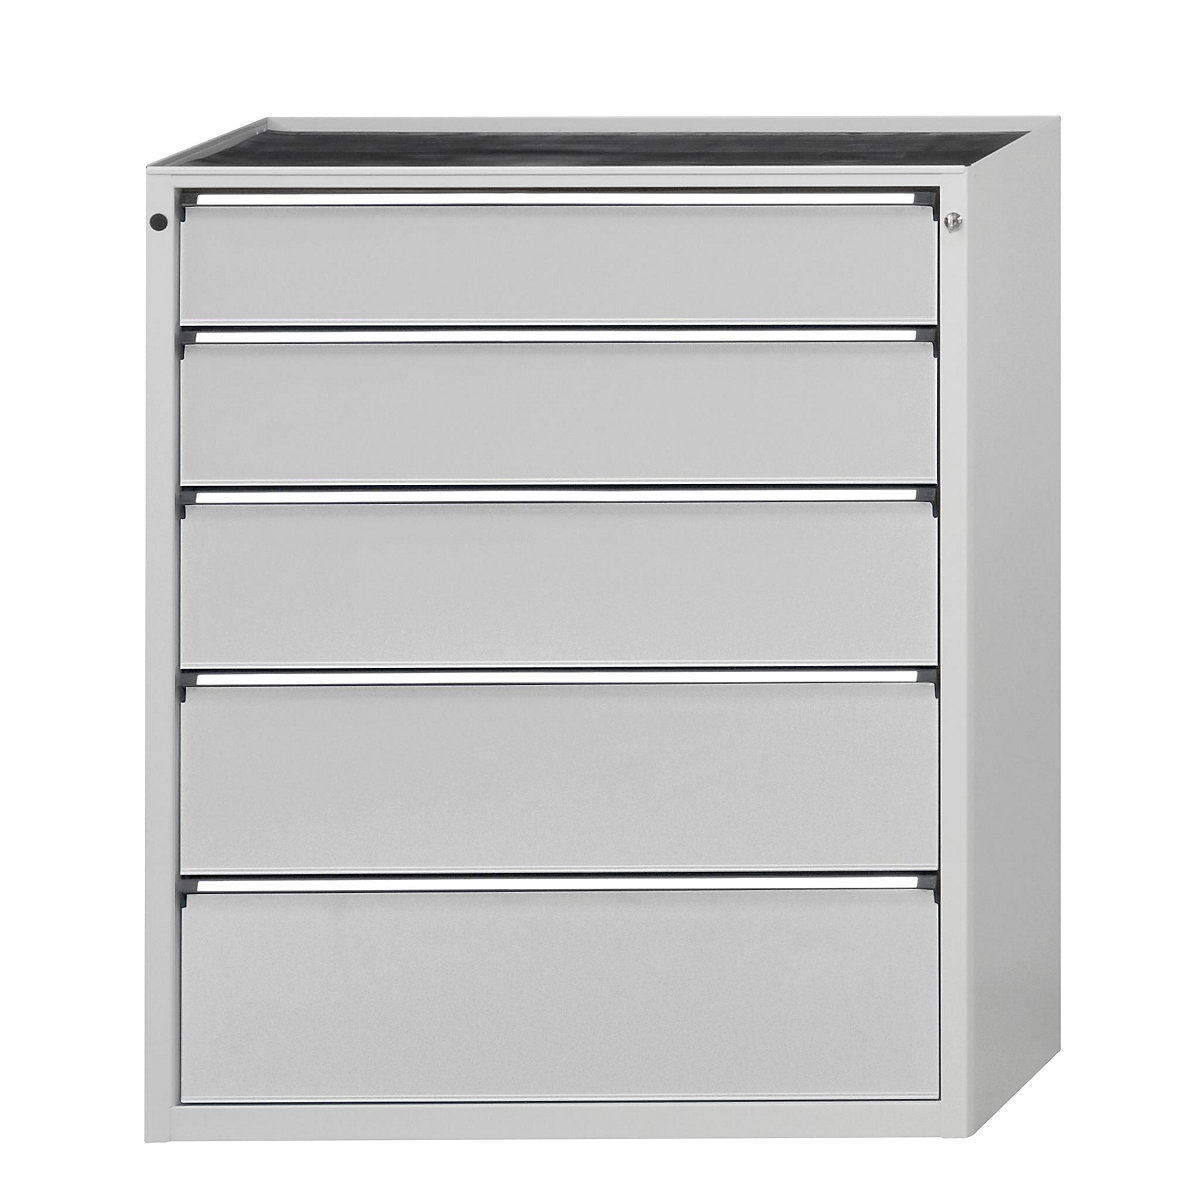 ANKE – Armoire à tiroirs, l x p 1060 x 675 mm, 5 tiroirs, hauteur 1280 mm, façade gris clair